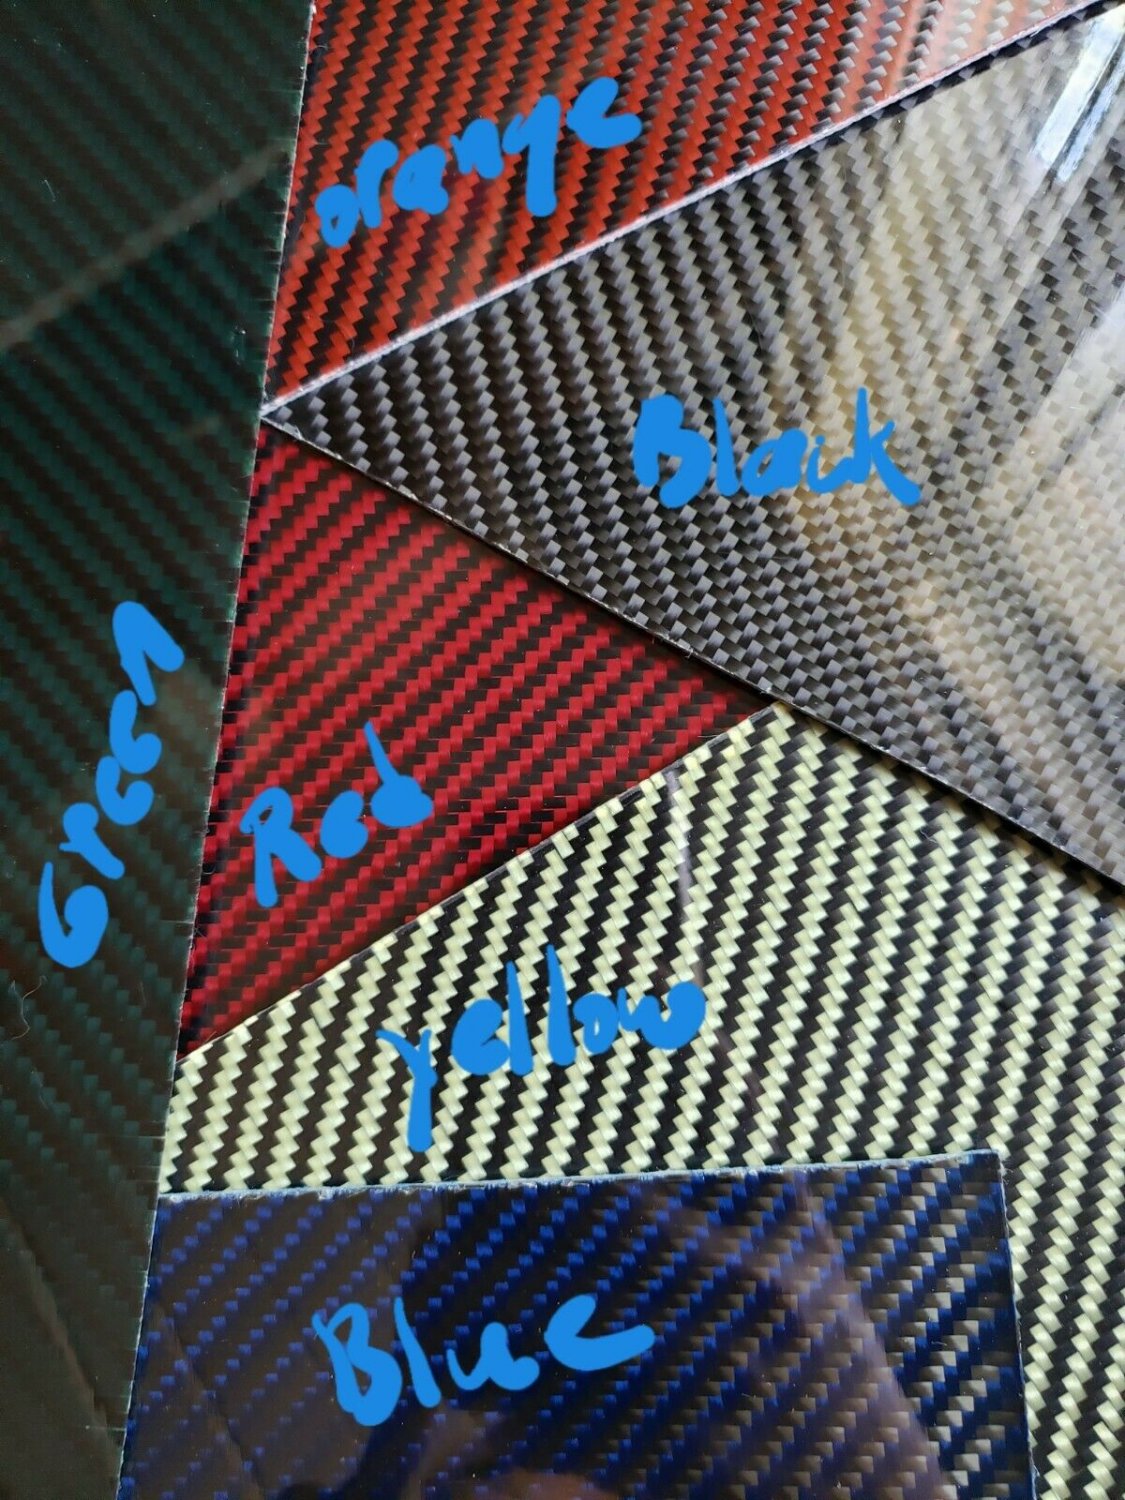 6"x30"x1/32" 2x2 Twill Carbon Fiber Fiberglass Sheet Panel Glossy One Side